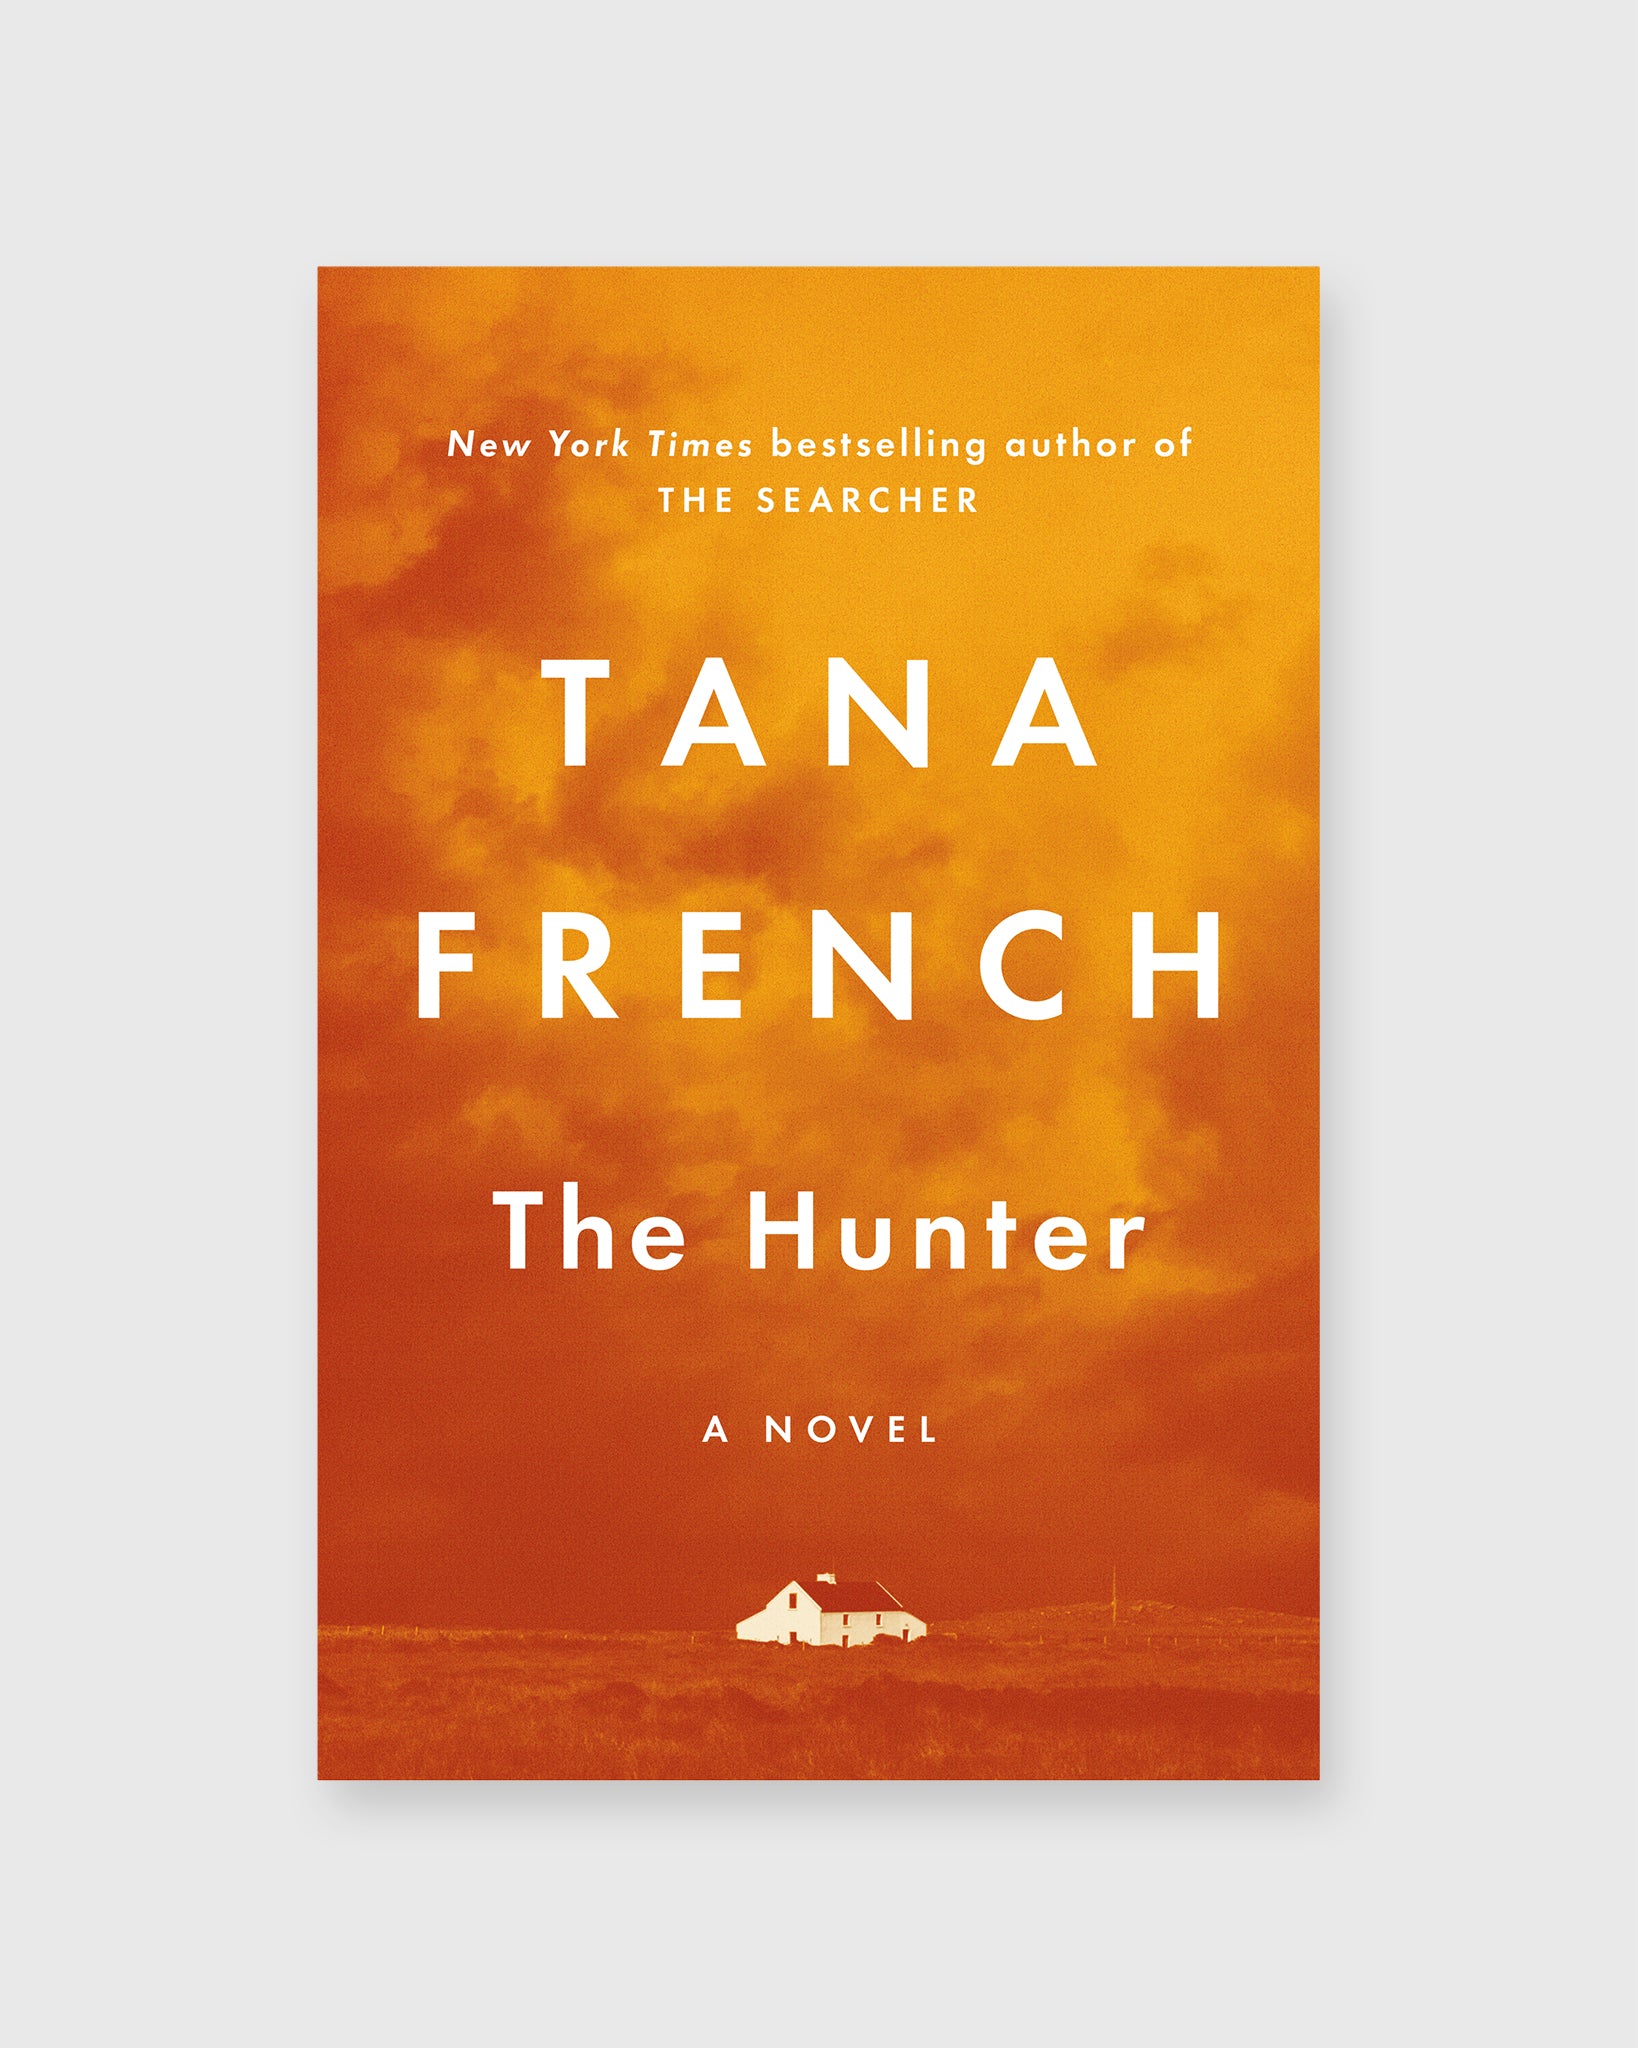 The Hunter - Tana French